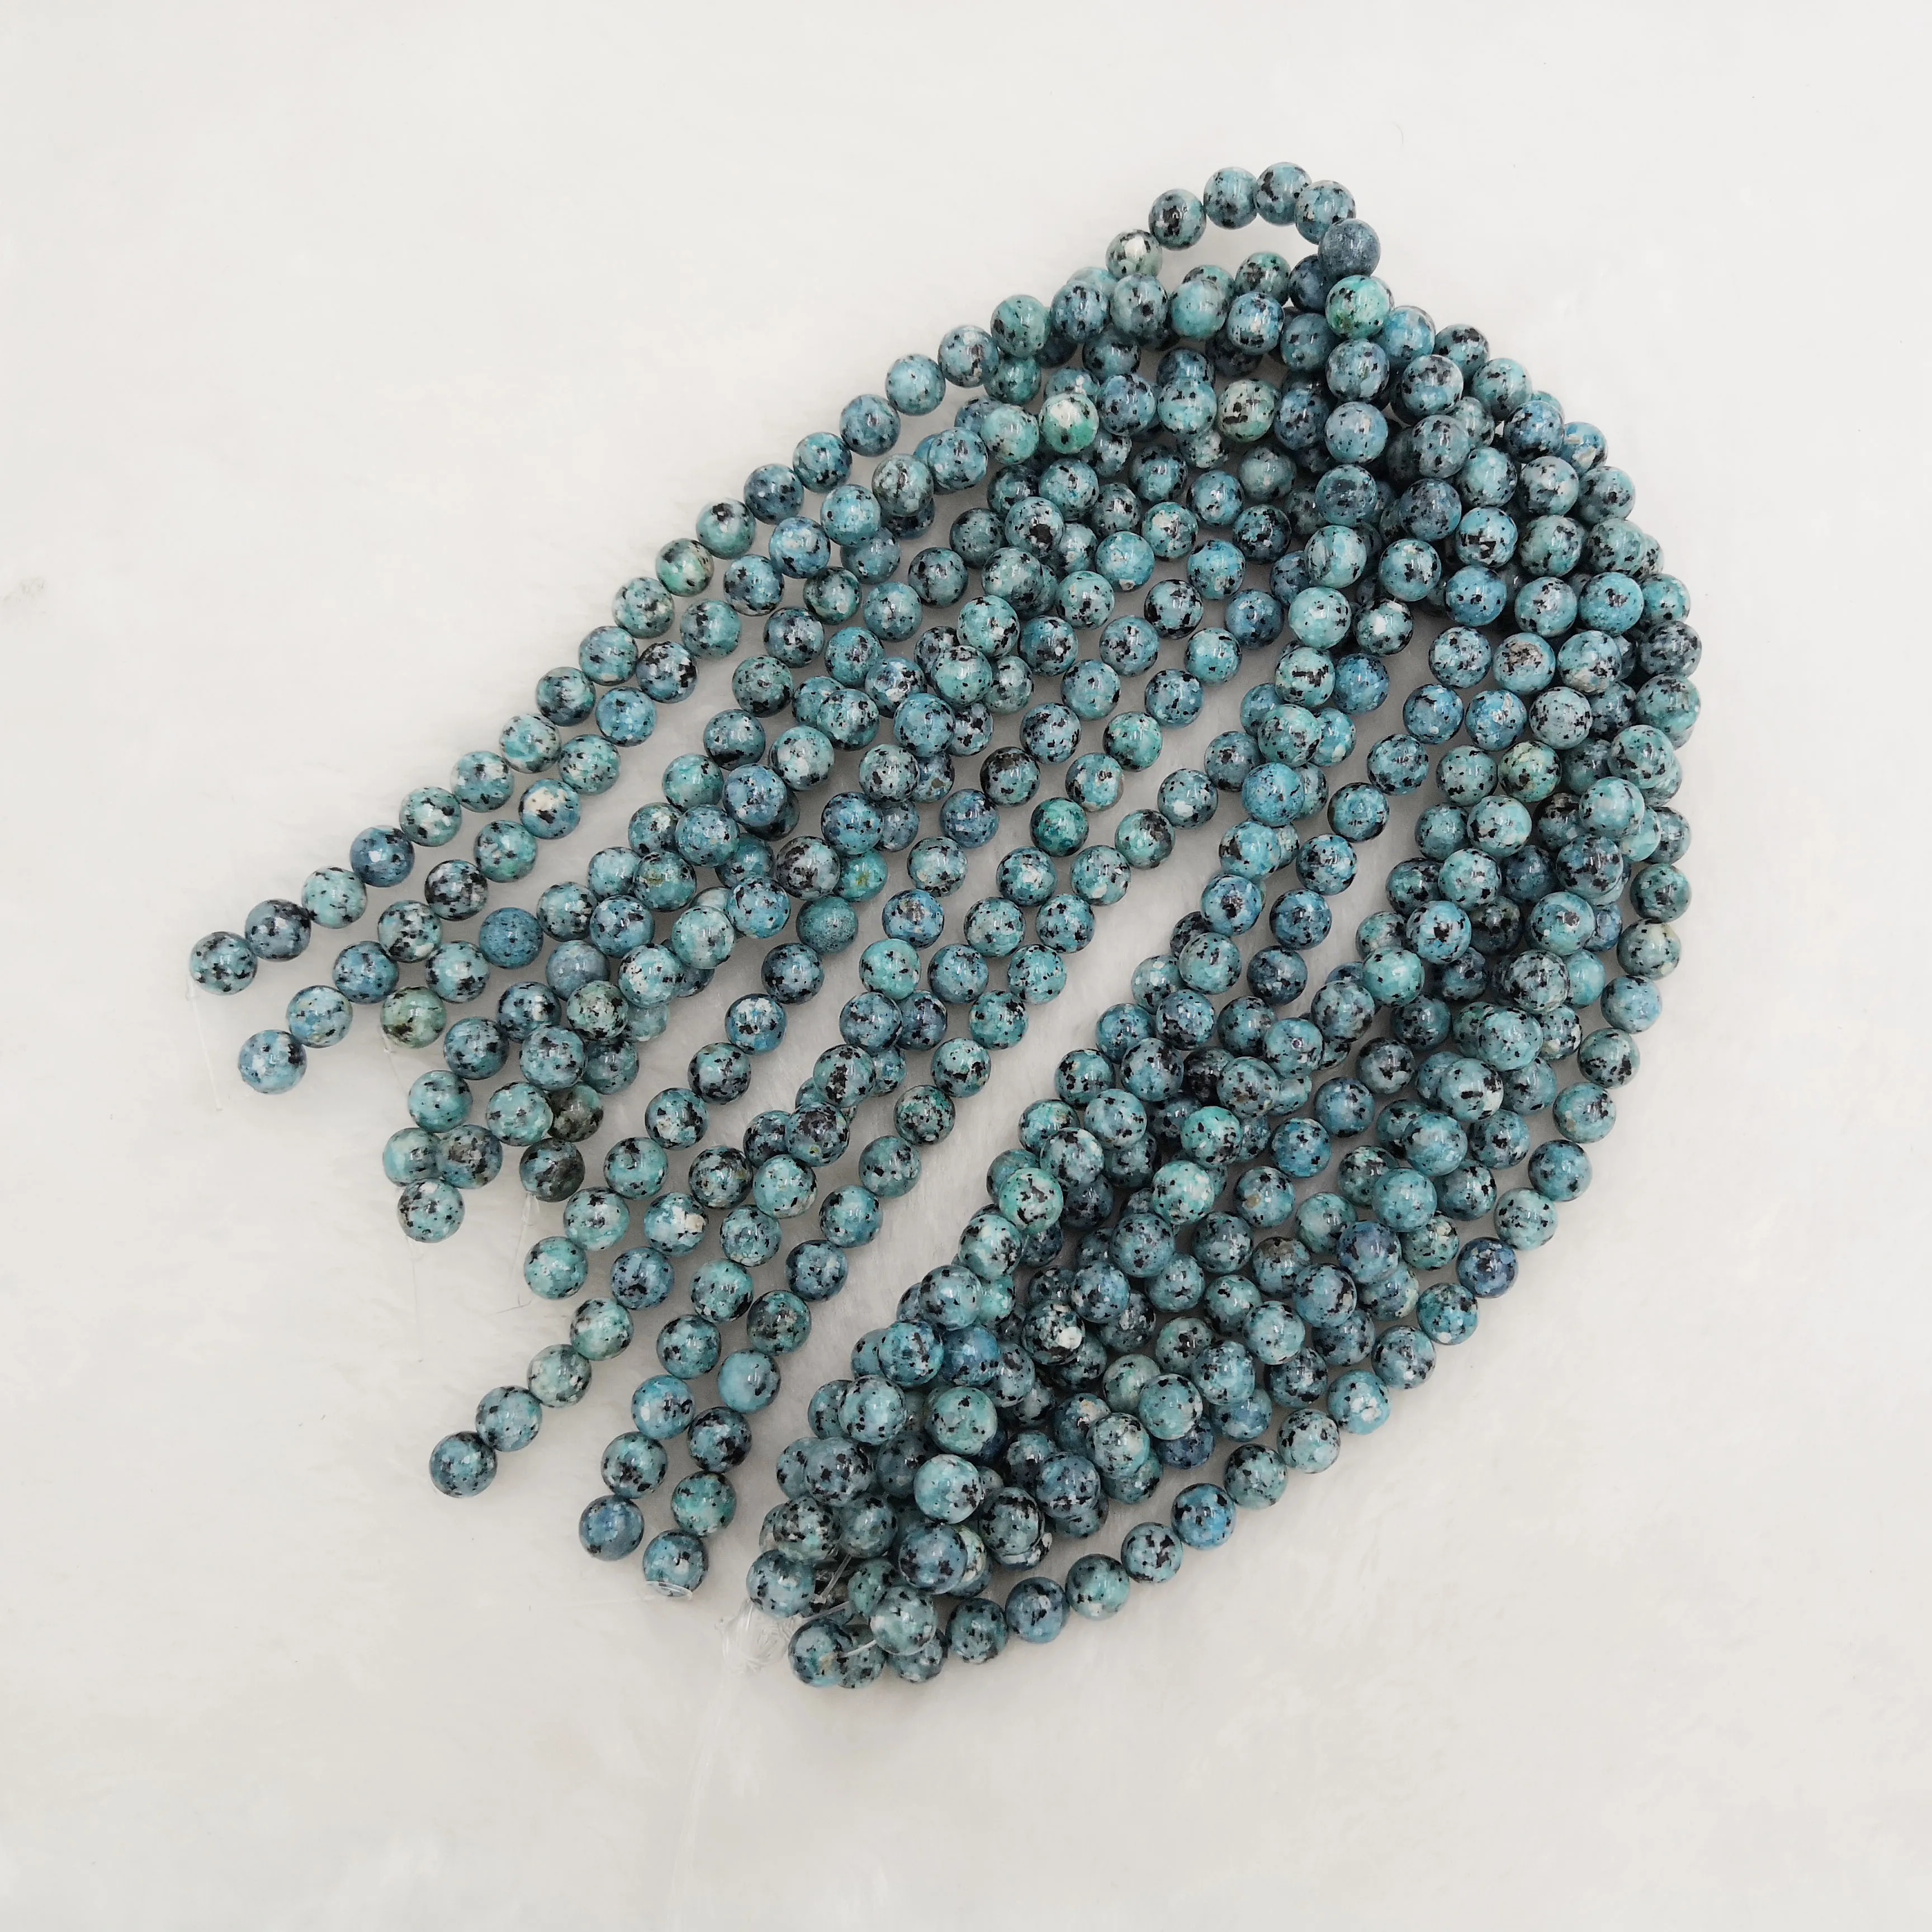 Azul blanco de piedras preciosas jaspe hilos cadena ronda cuentas semi preciosas piedras para la fabricación de la joyería pulseras